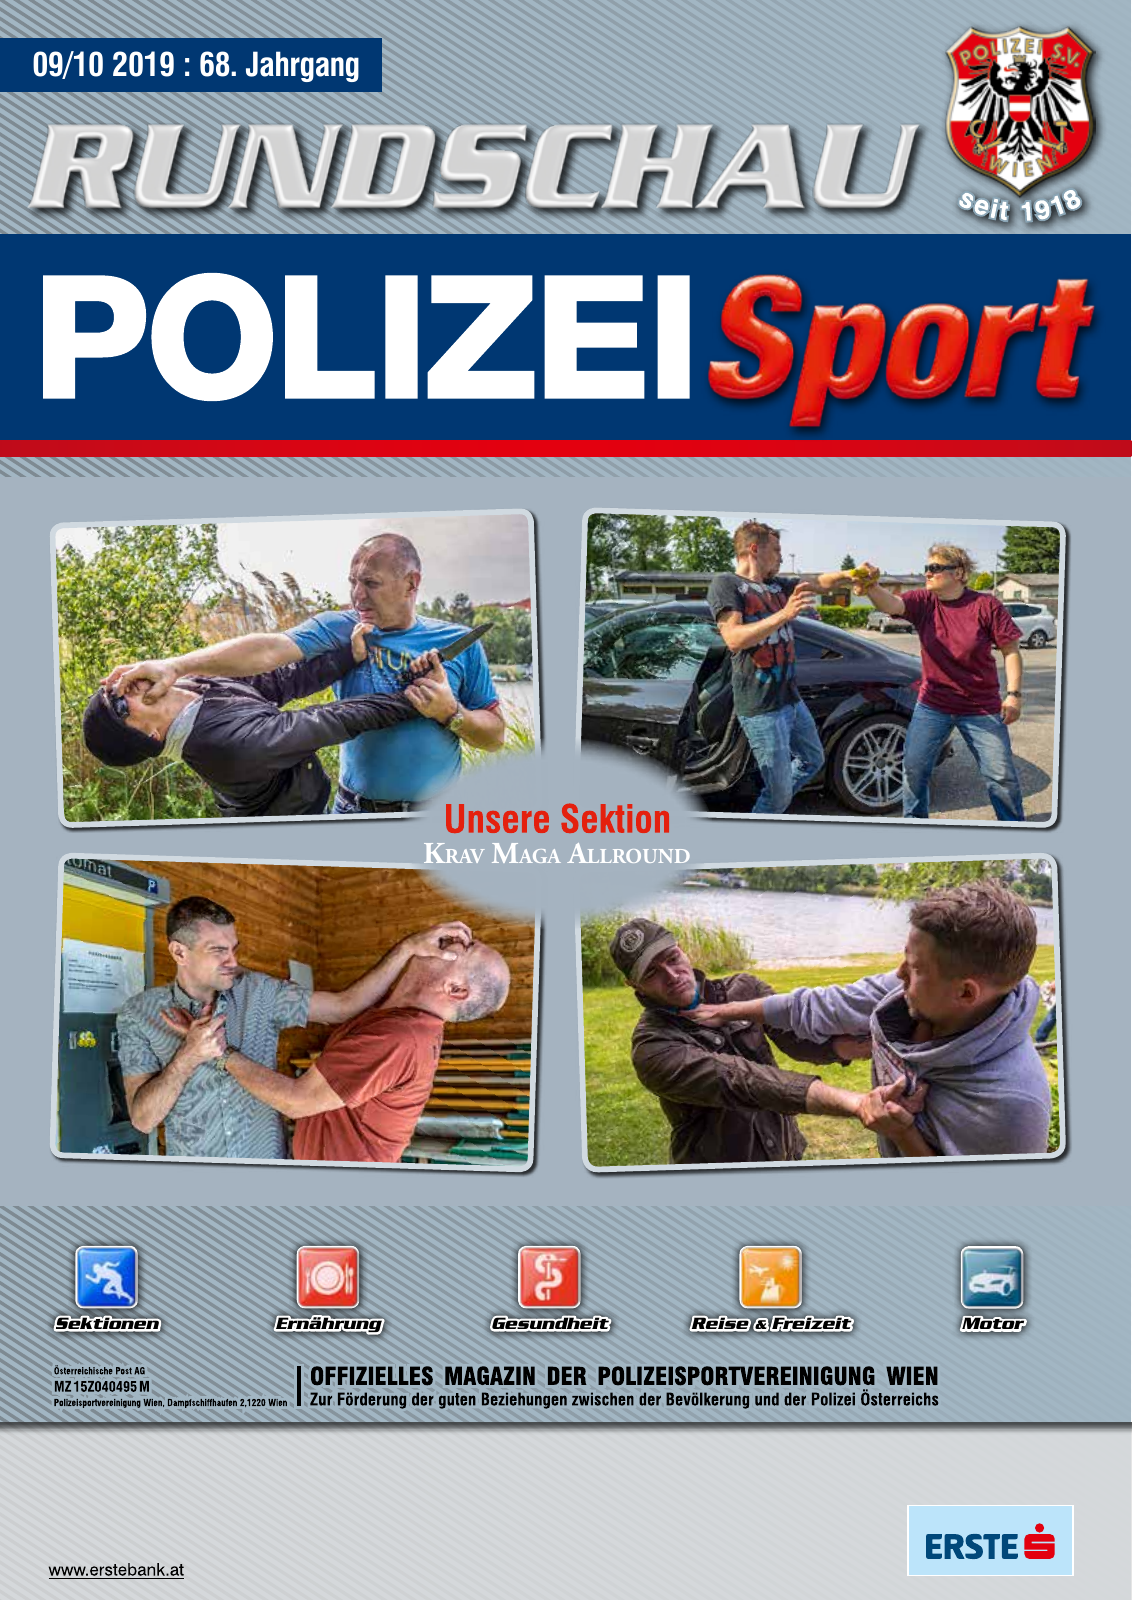 Vorschau Rundschau Polizei Sport 09-10/2019 Seite 1